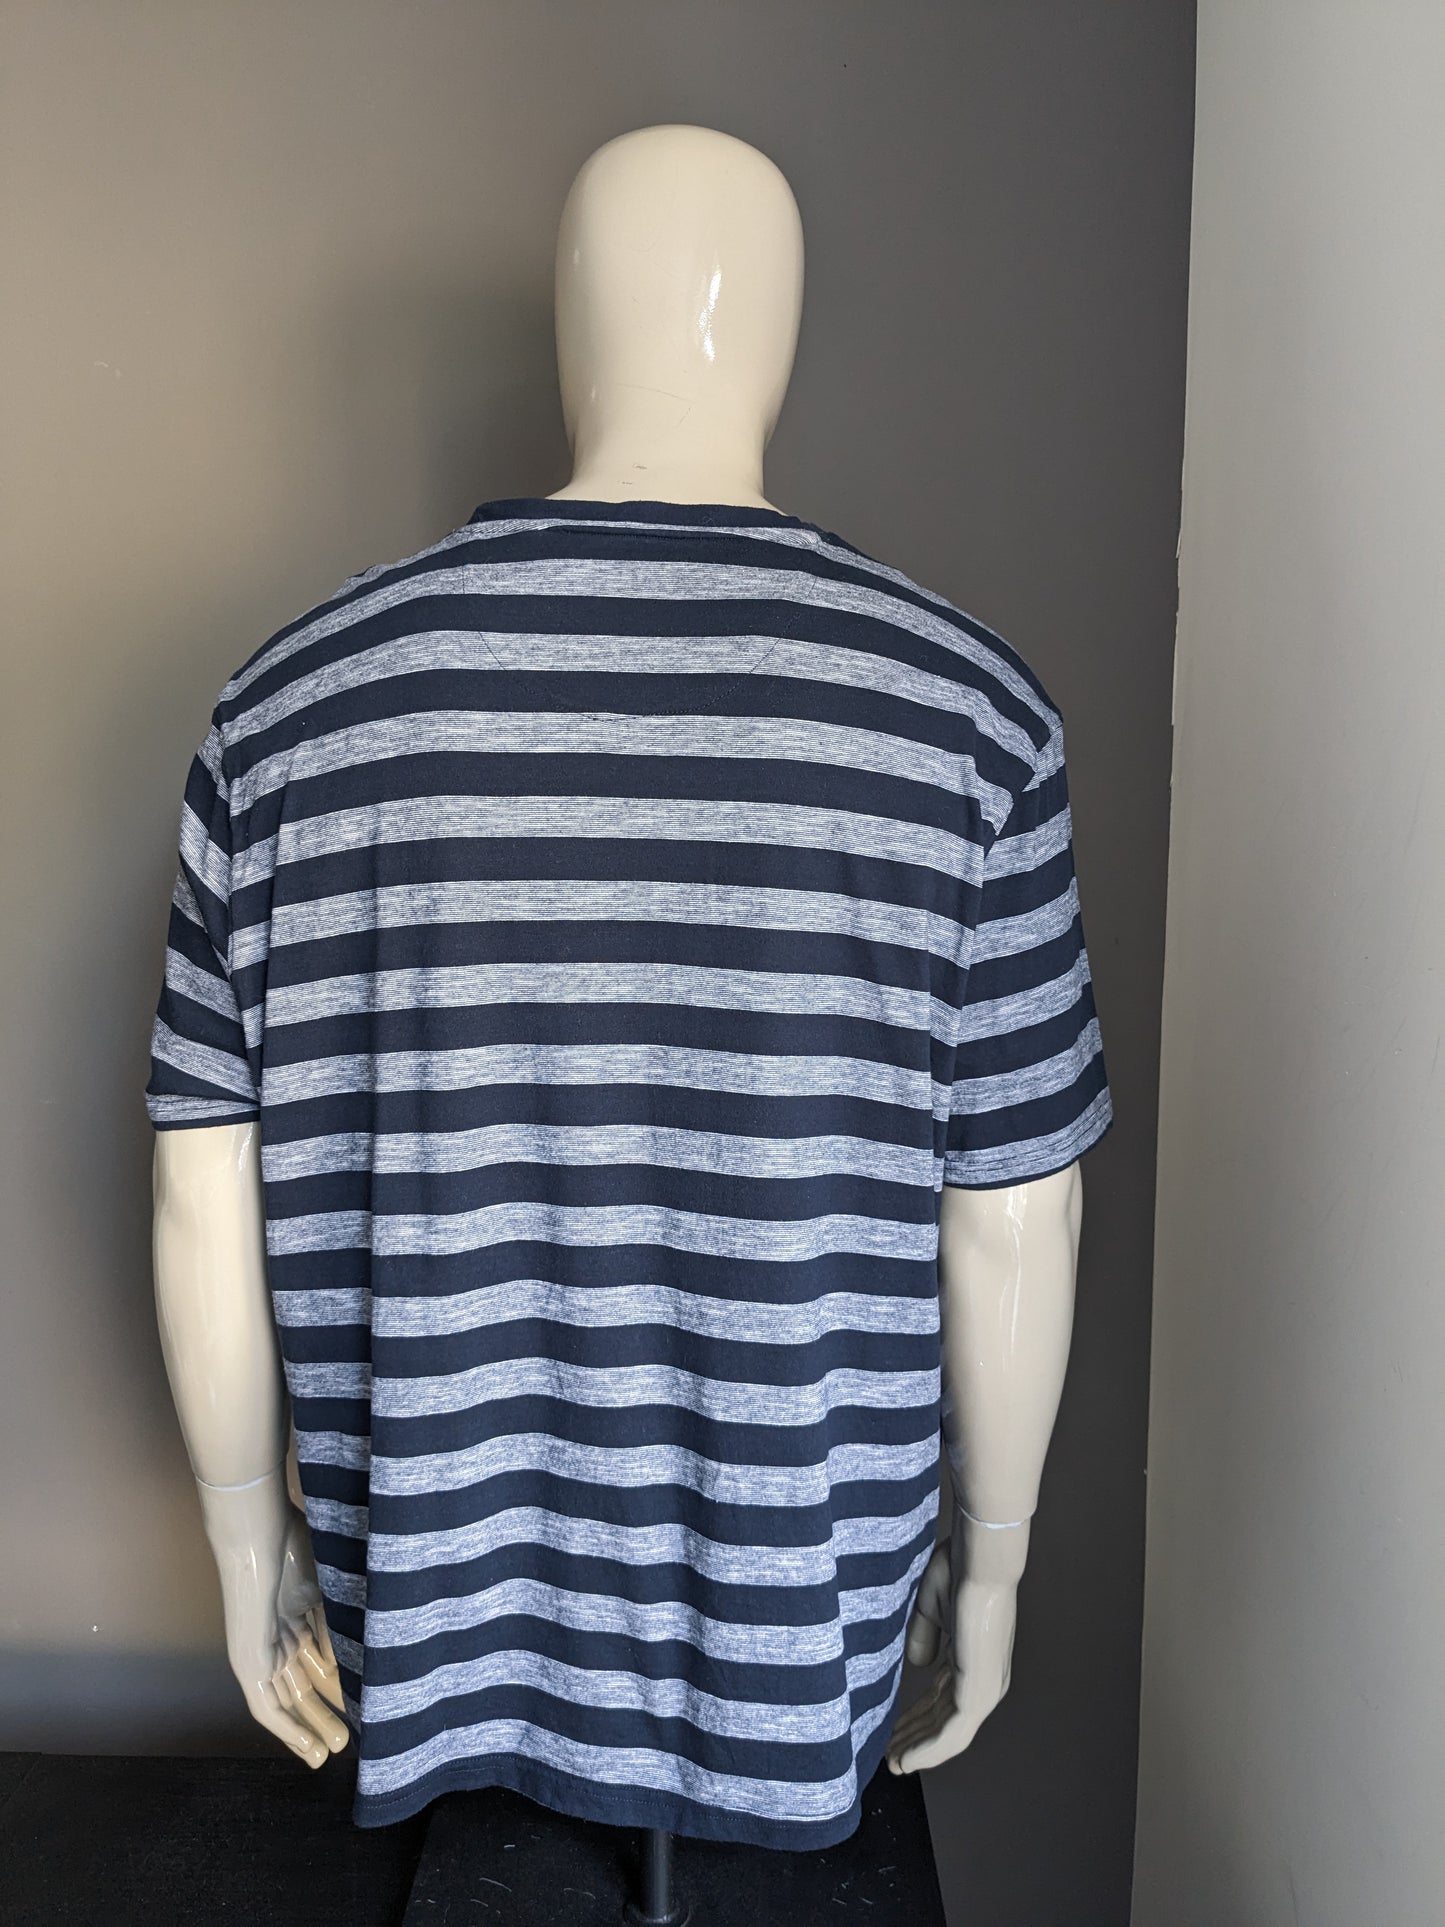 Westbury shirt. Blue gray striped. Size 3XL / XXXL.